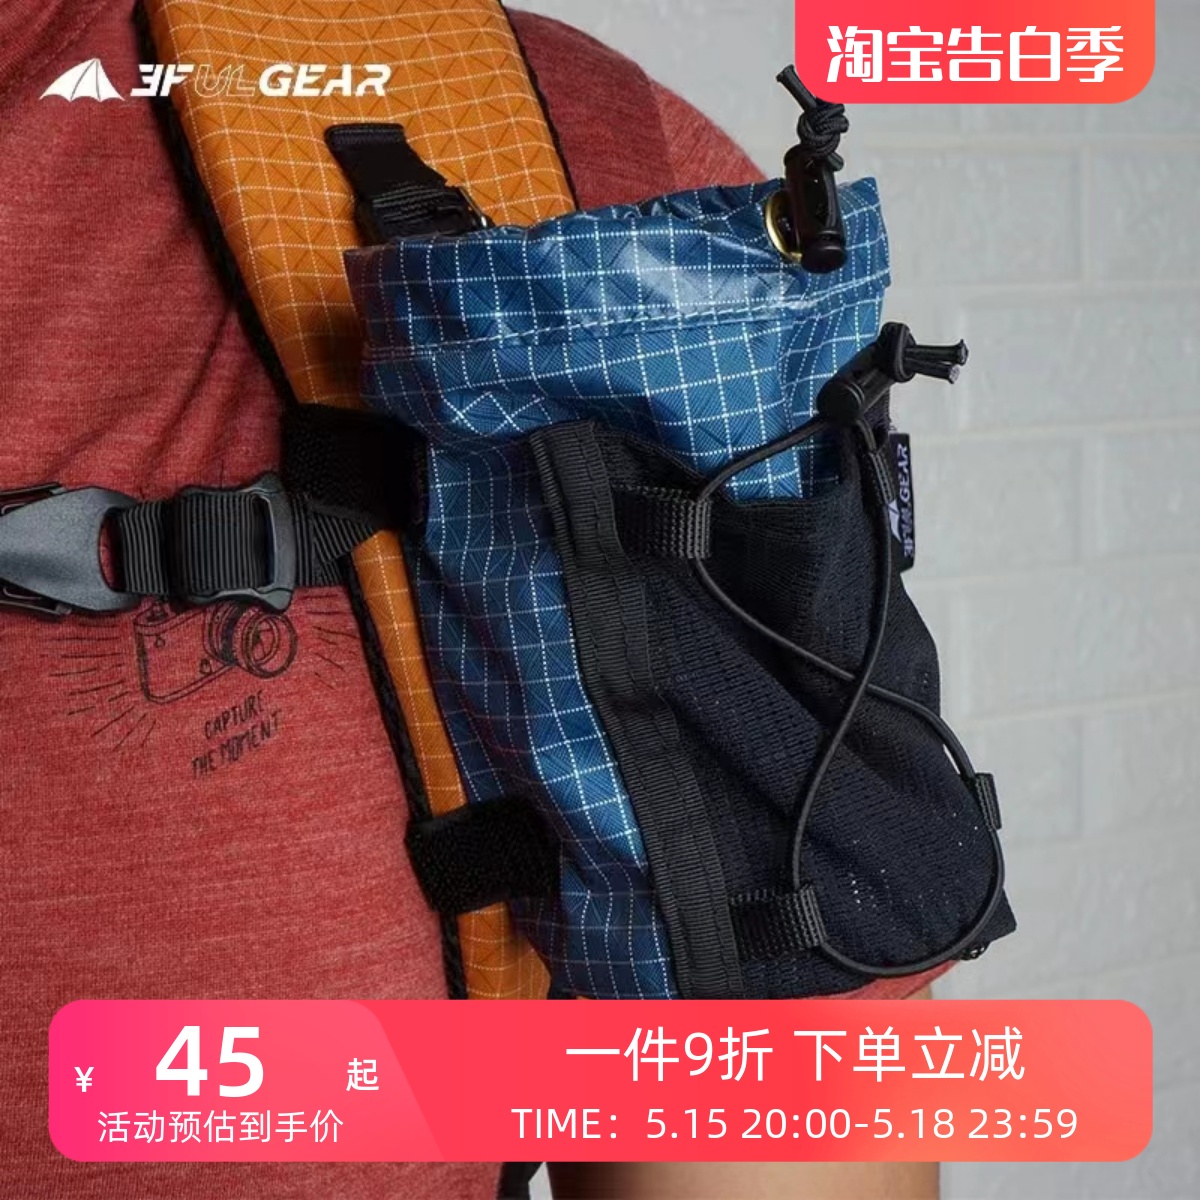 三峰水壶套户外徒步登山装备用品大力马超轻背包肩带外挂袋配件